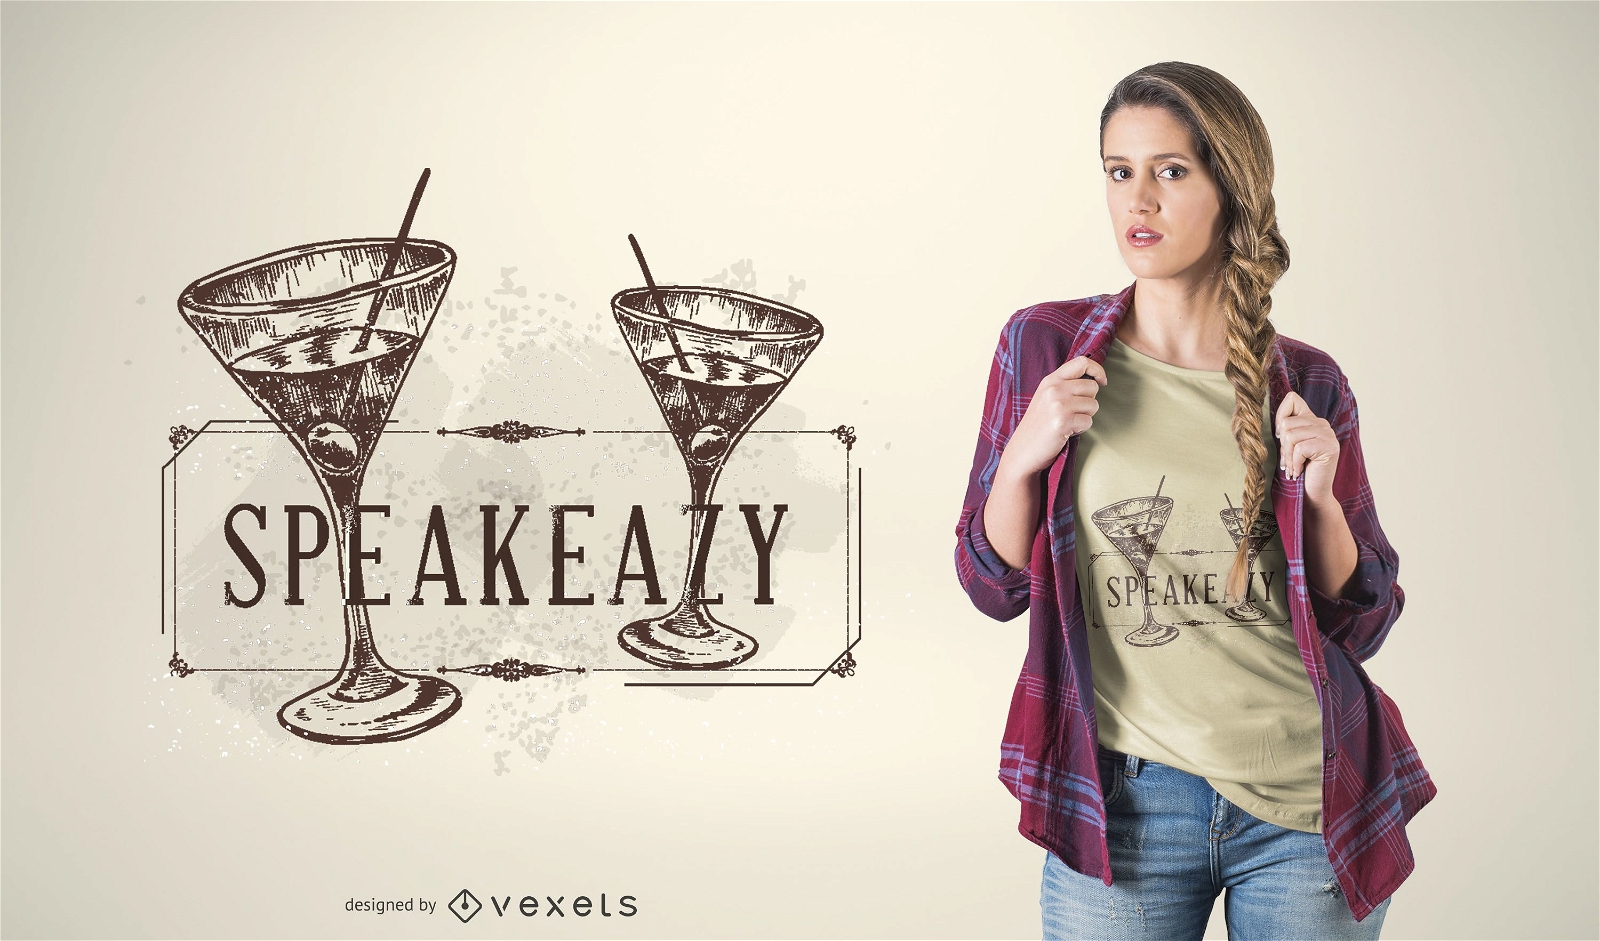 Speak easy cocktail t-shirt design